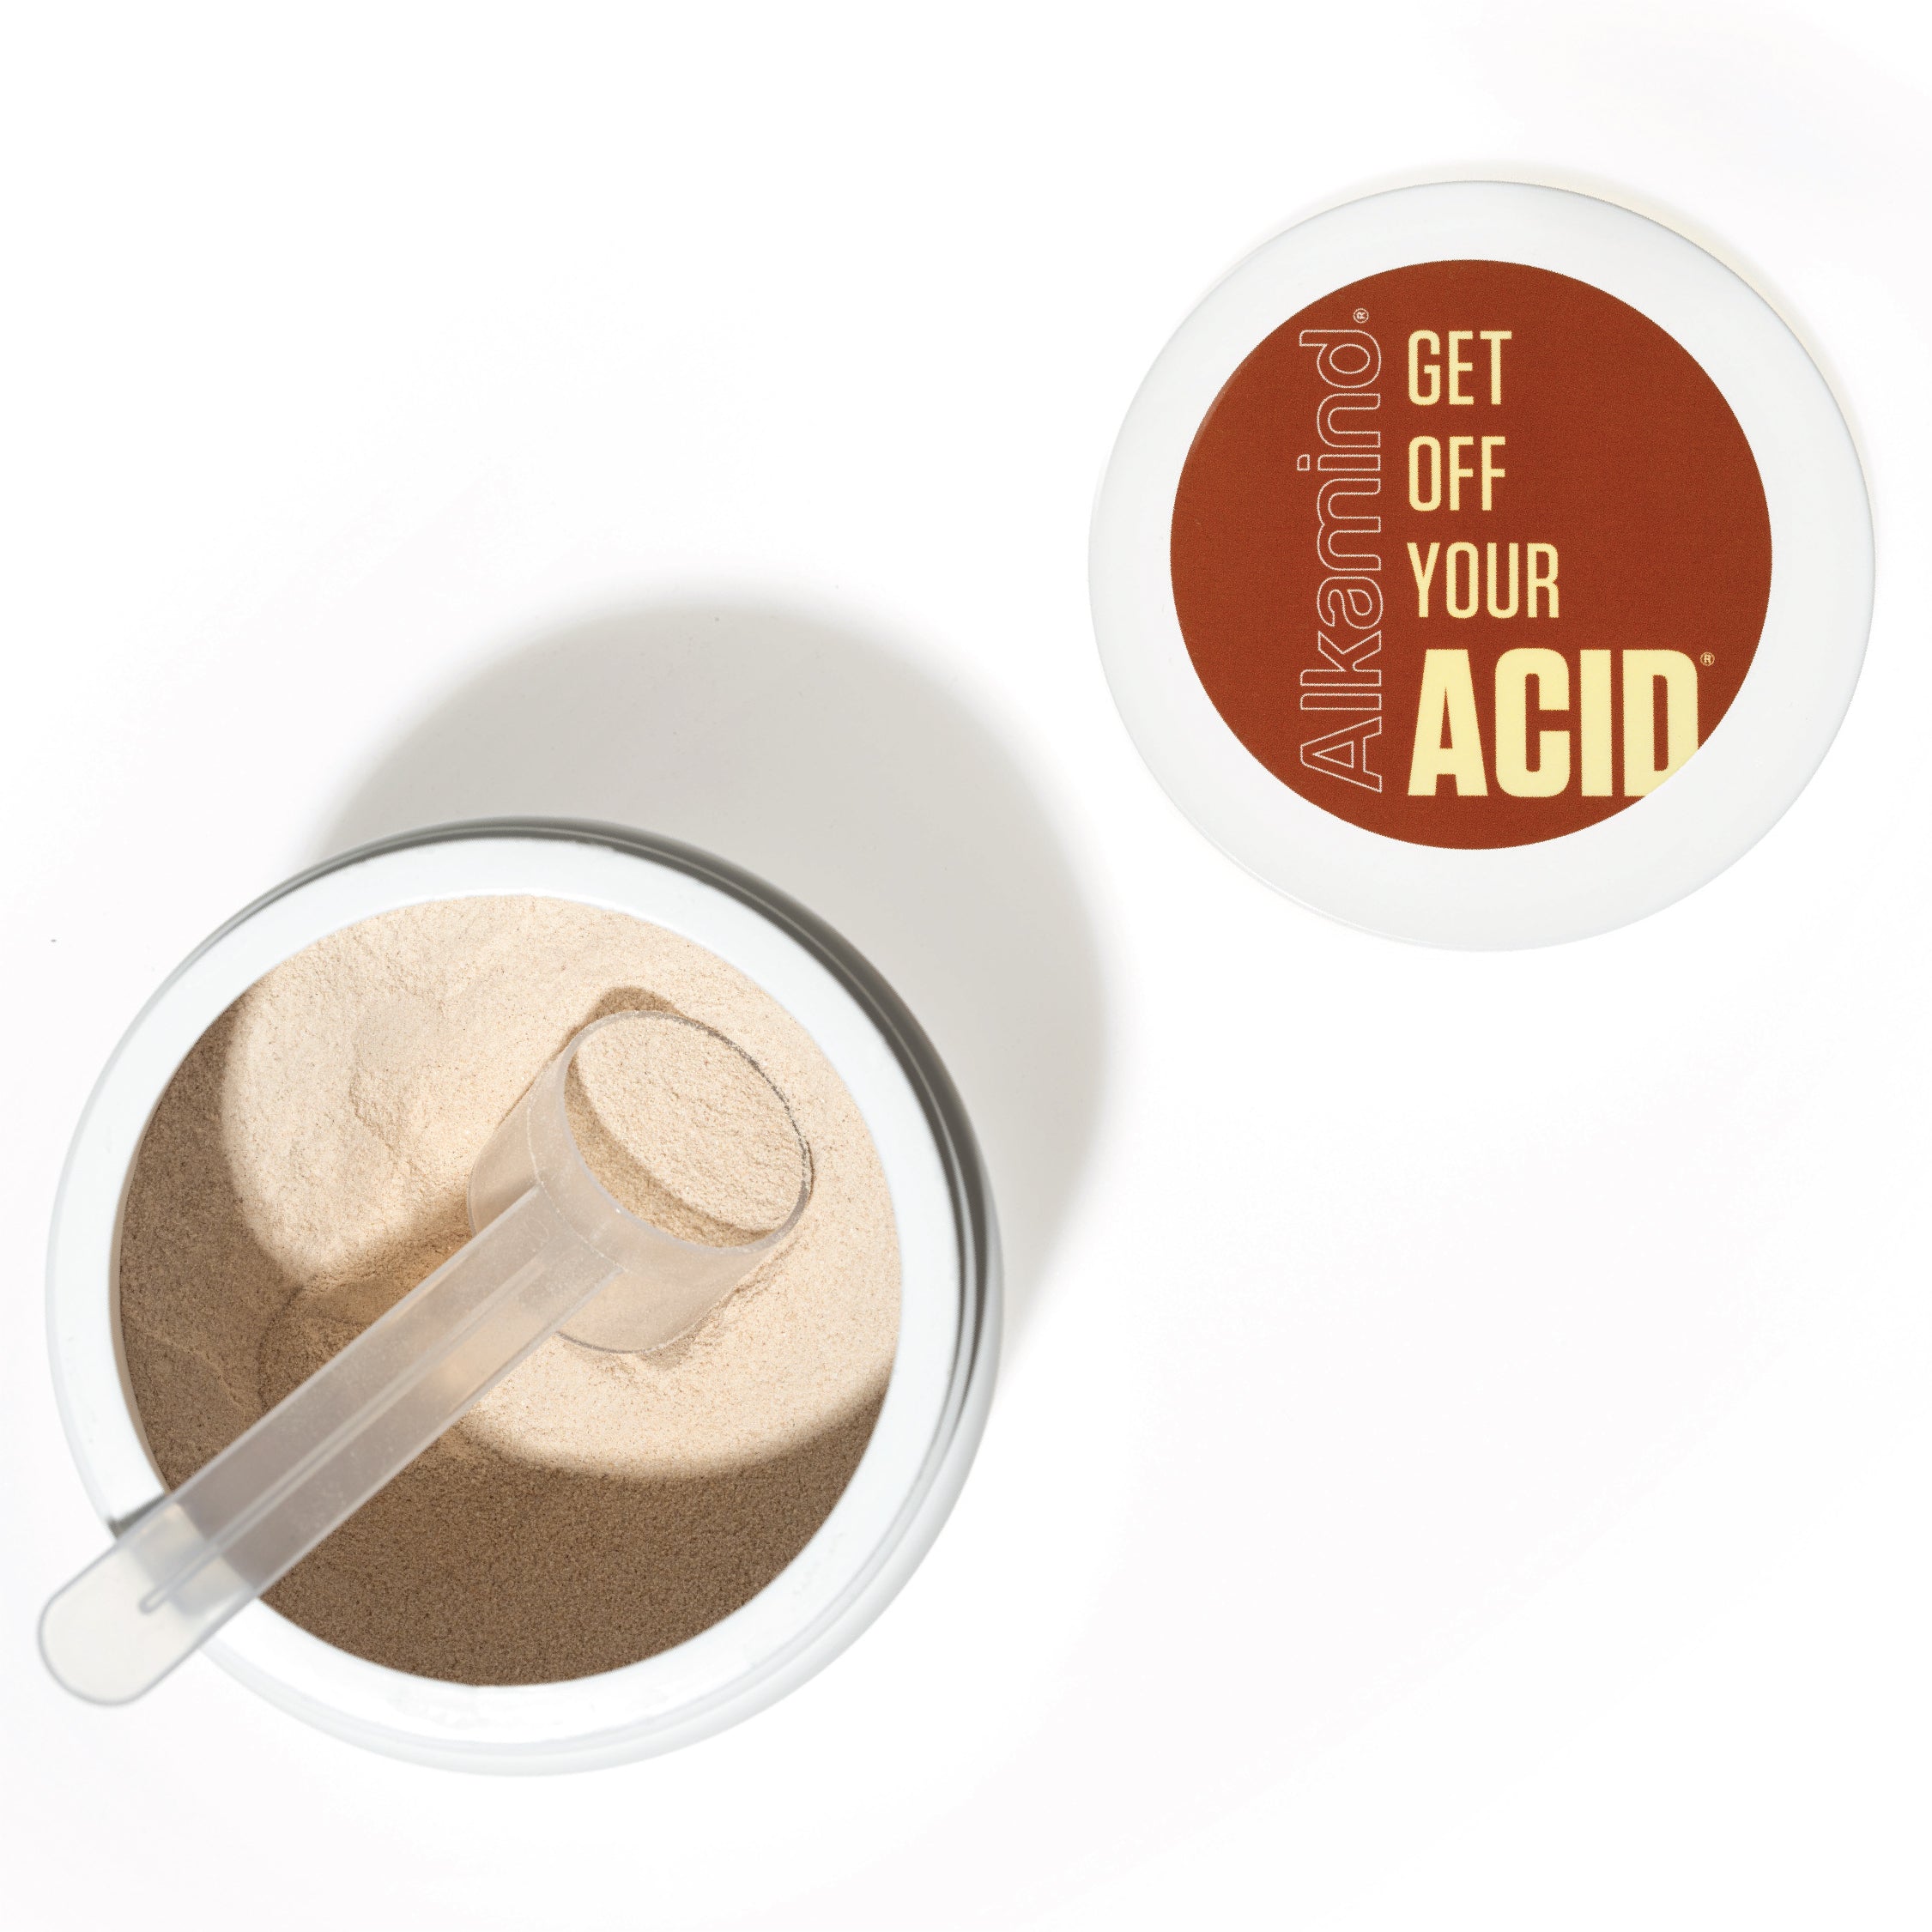 Acid-Kicking Coffee Hazelnut Alkalizer